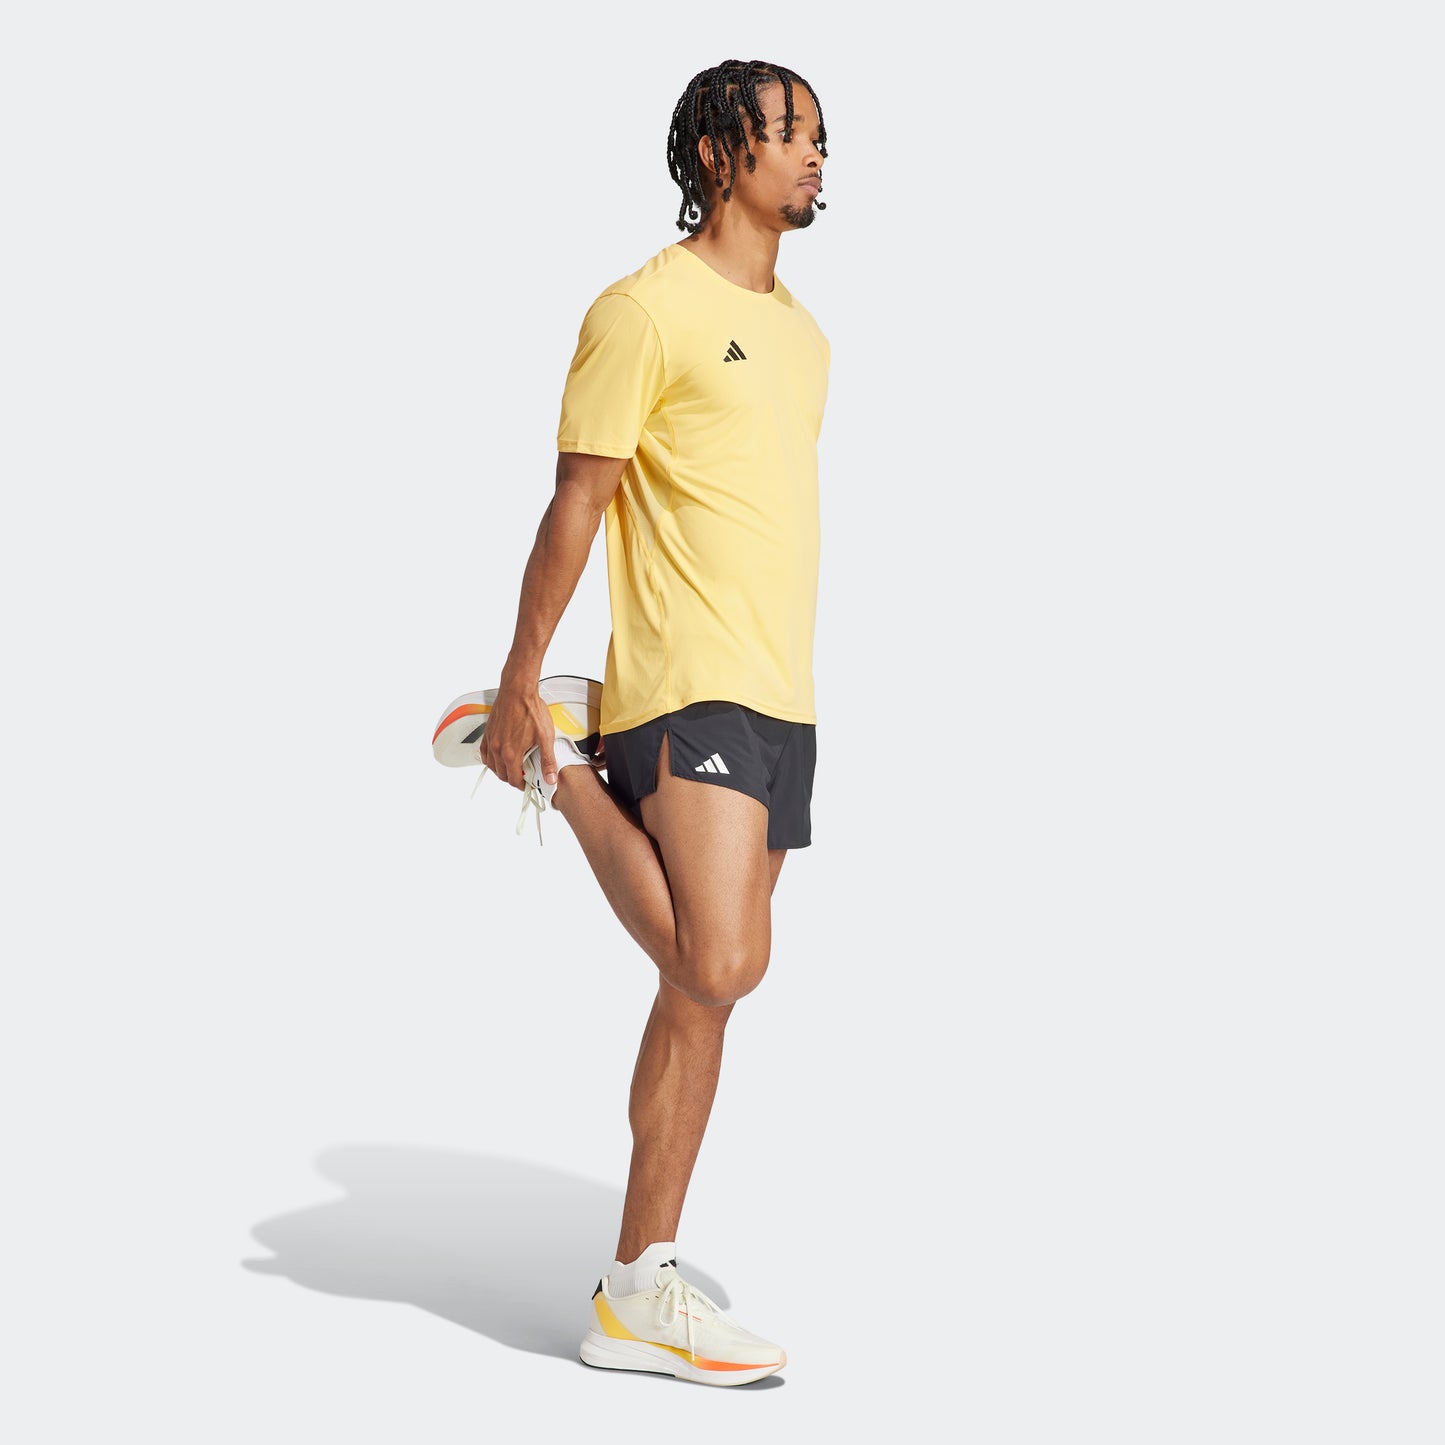 adidas Adizero Essentials Running Shorts | Black | Men's